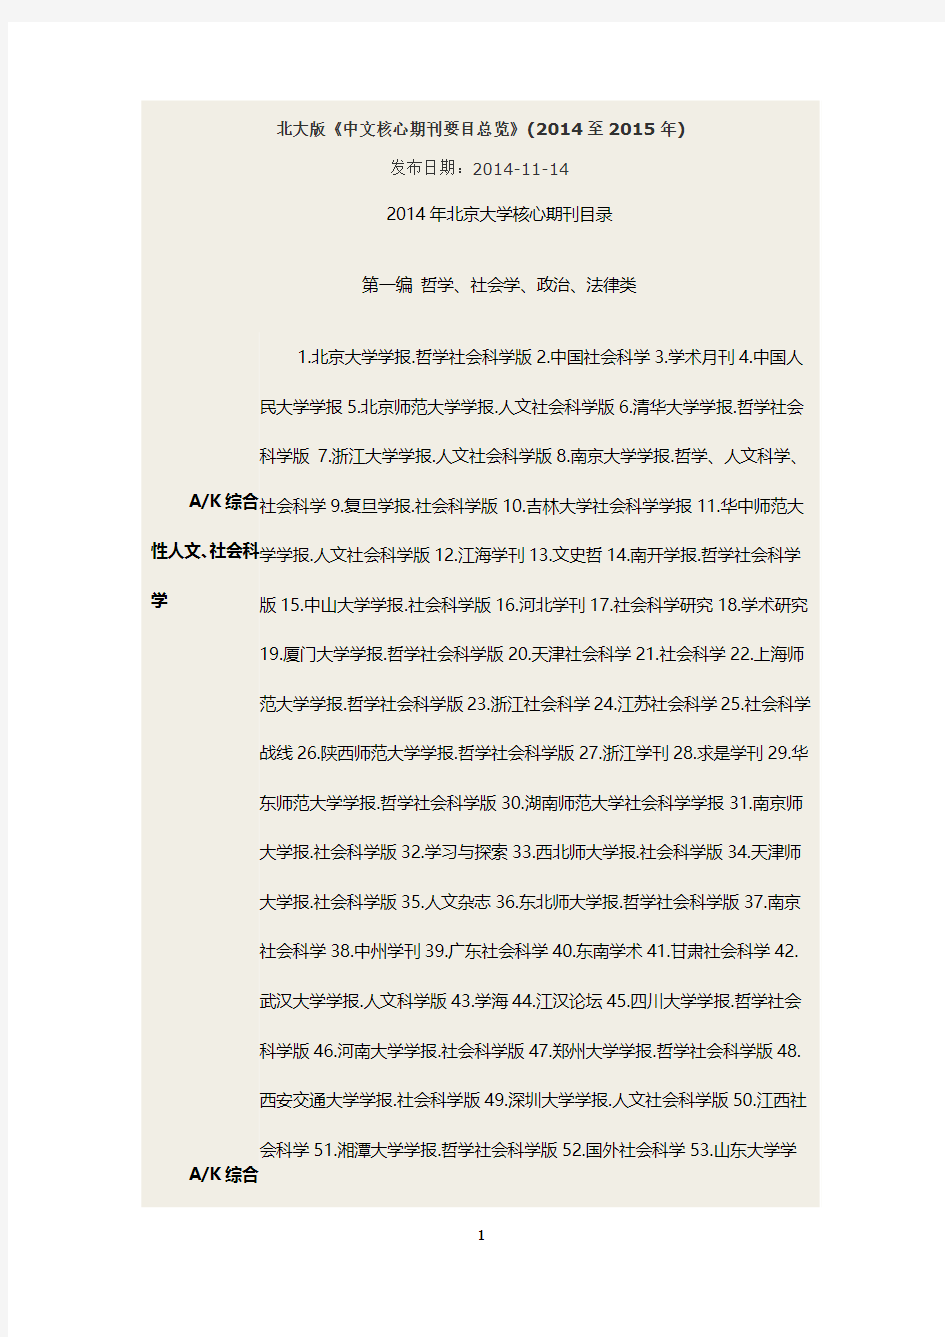 北大版《中文核心期刊要目总览》(2014至2015年)